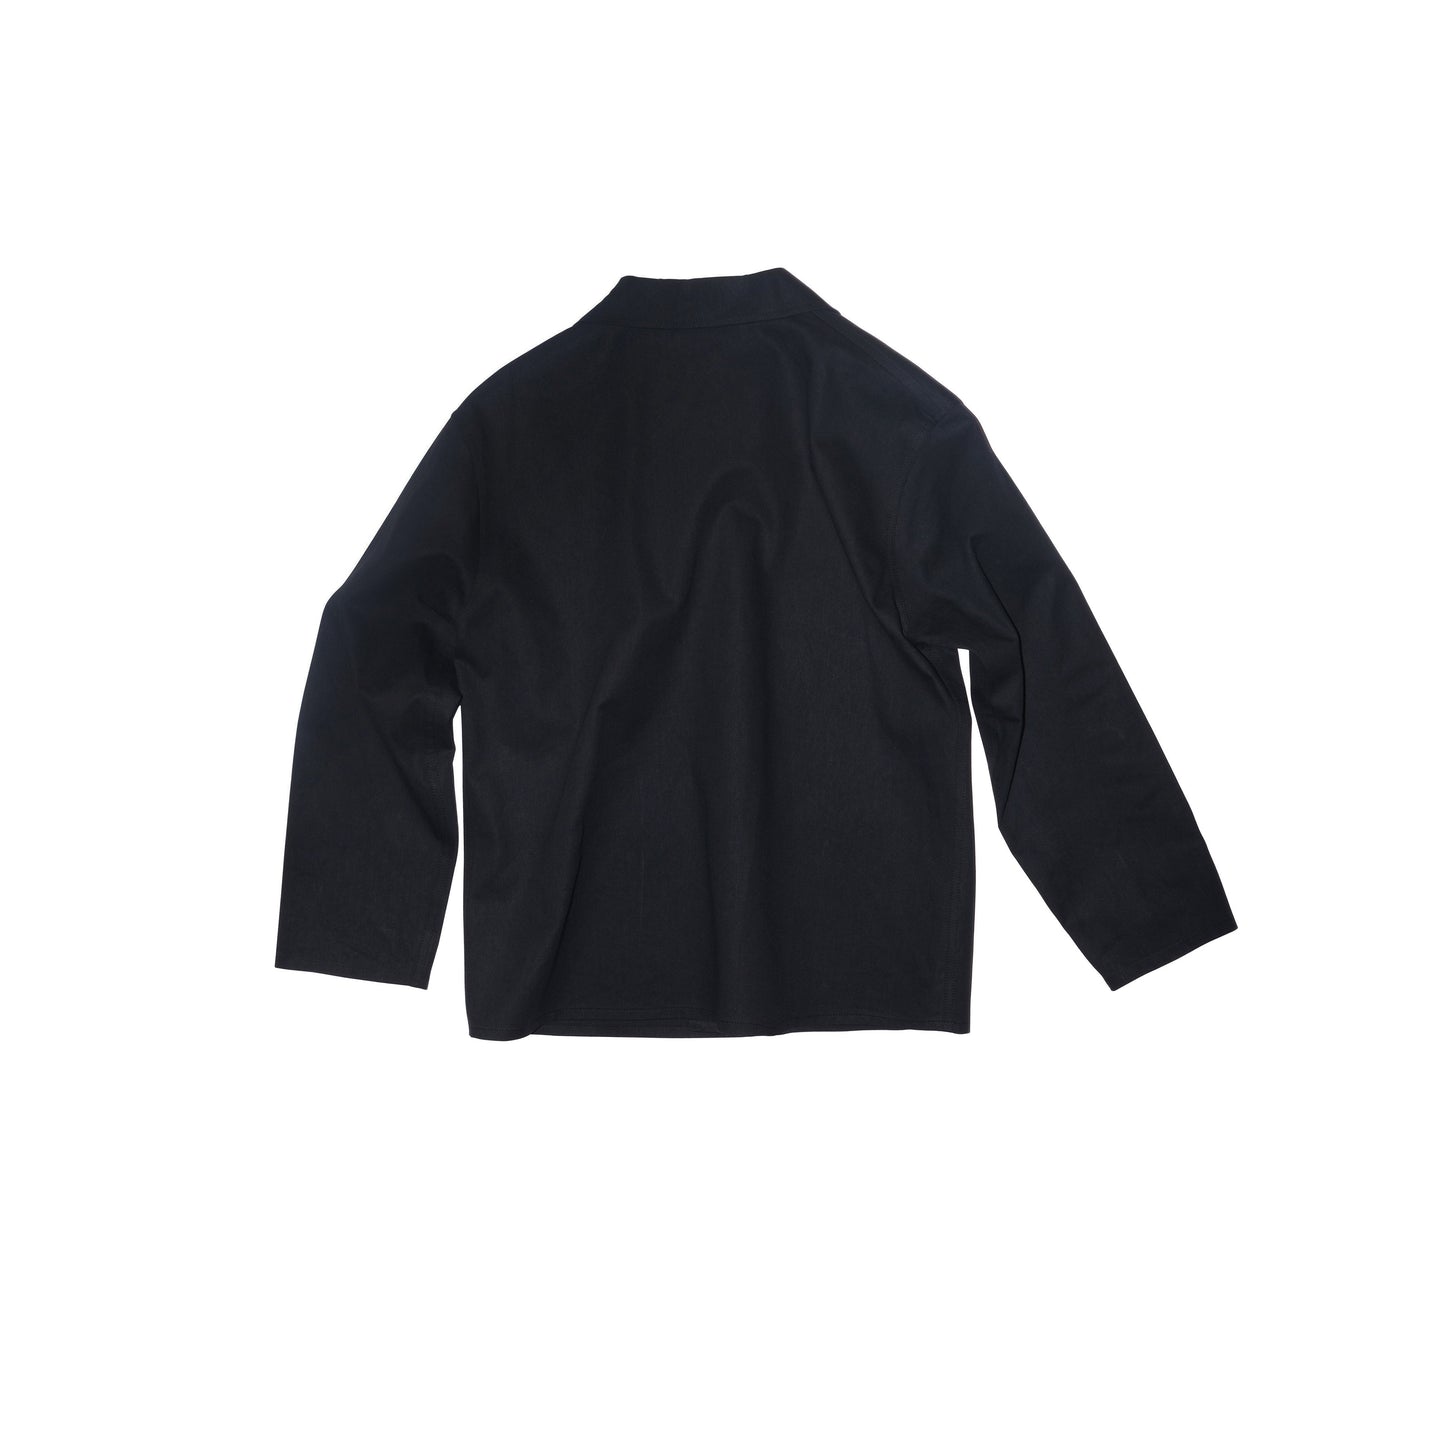 Bill Unlined Workwear Jacket Black